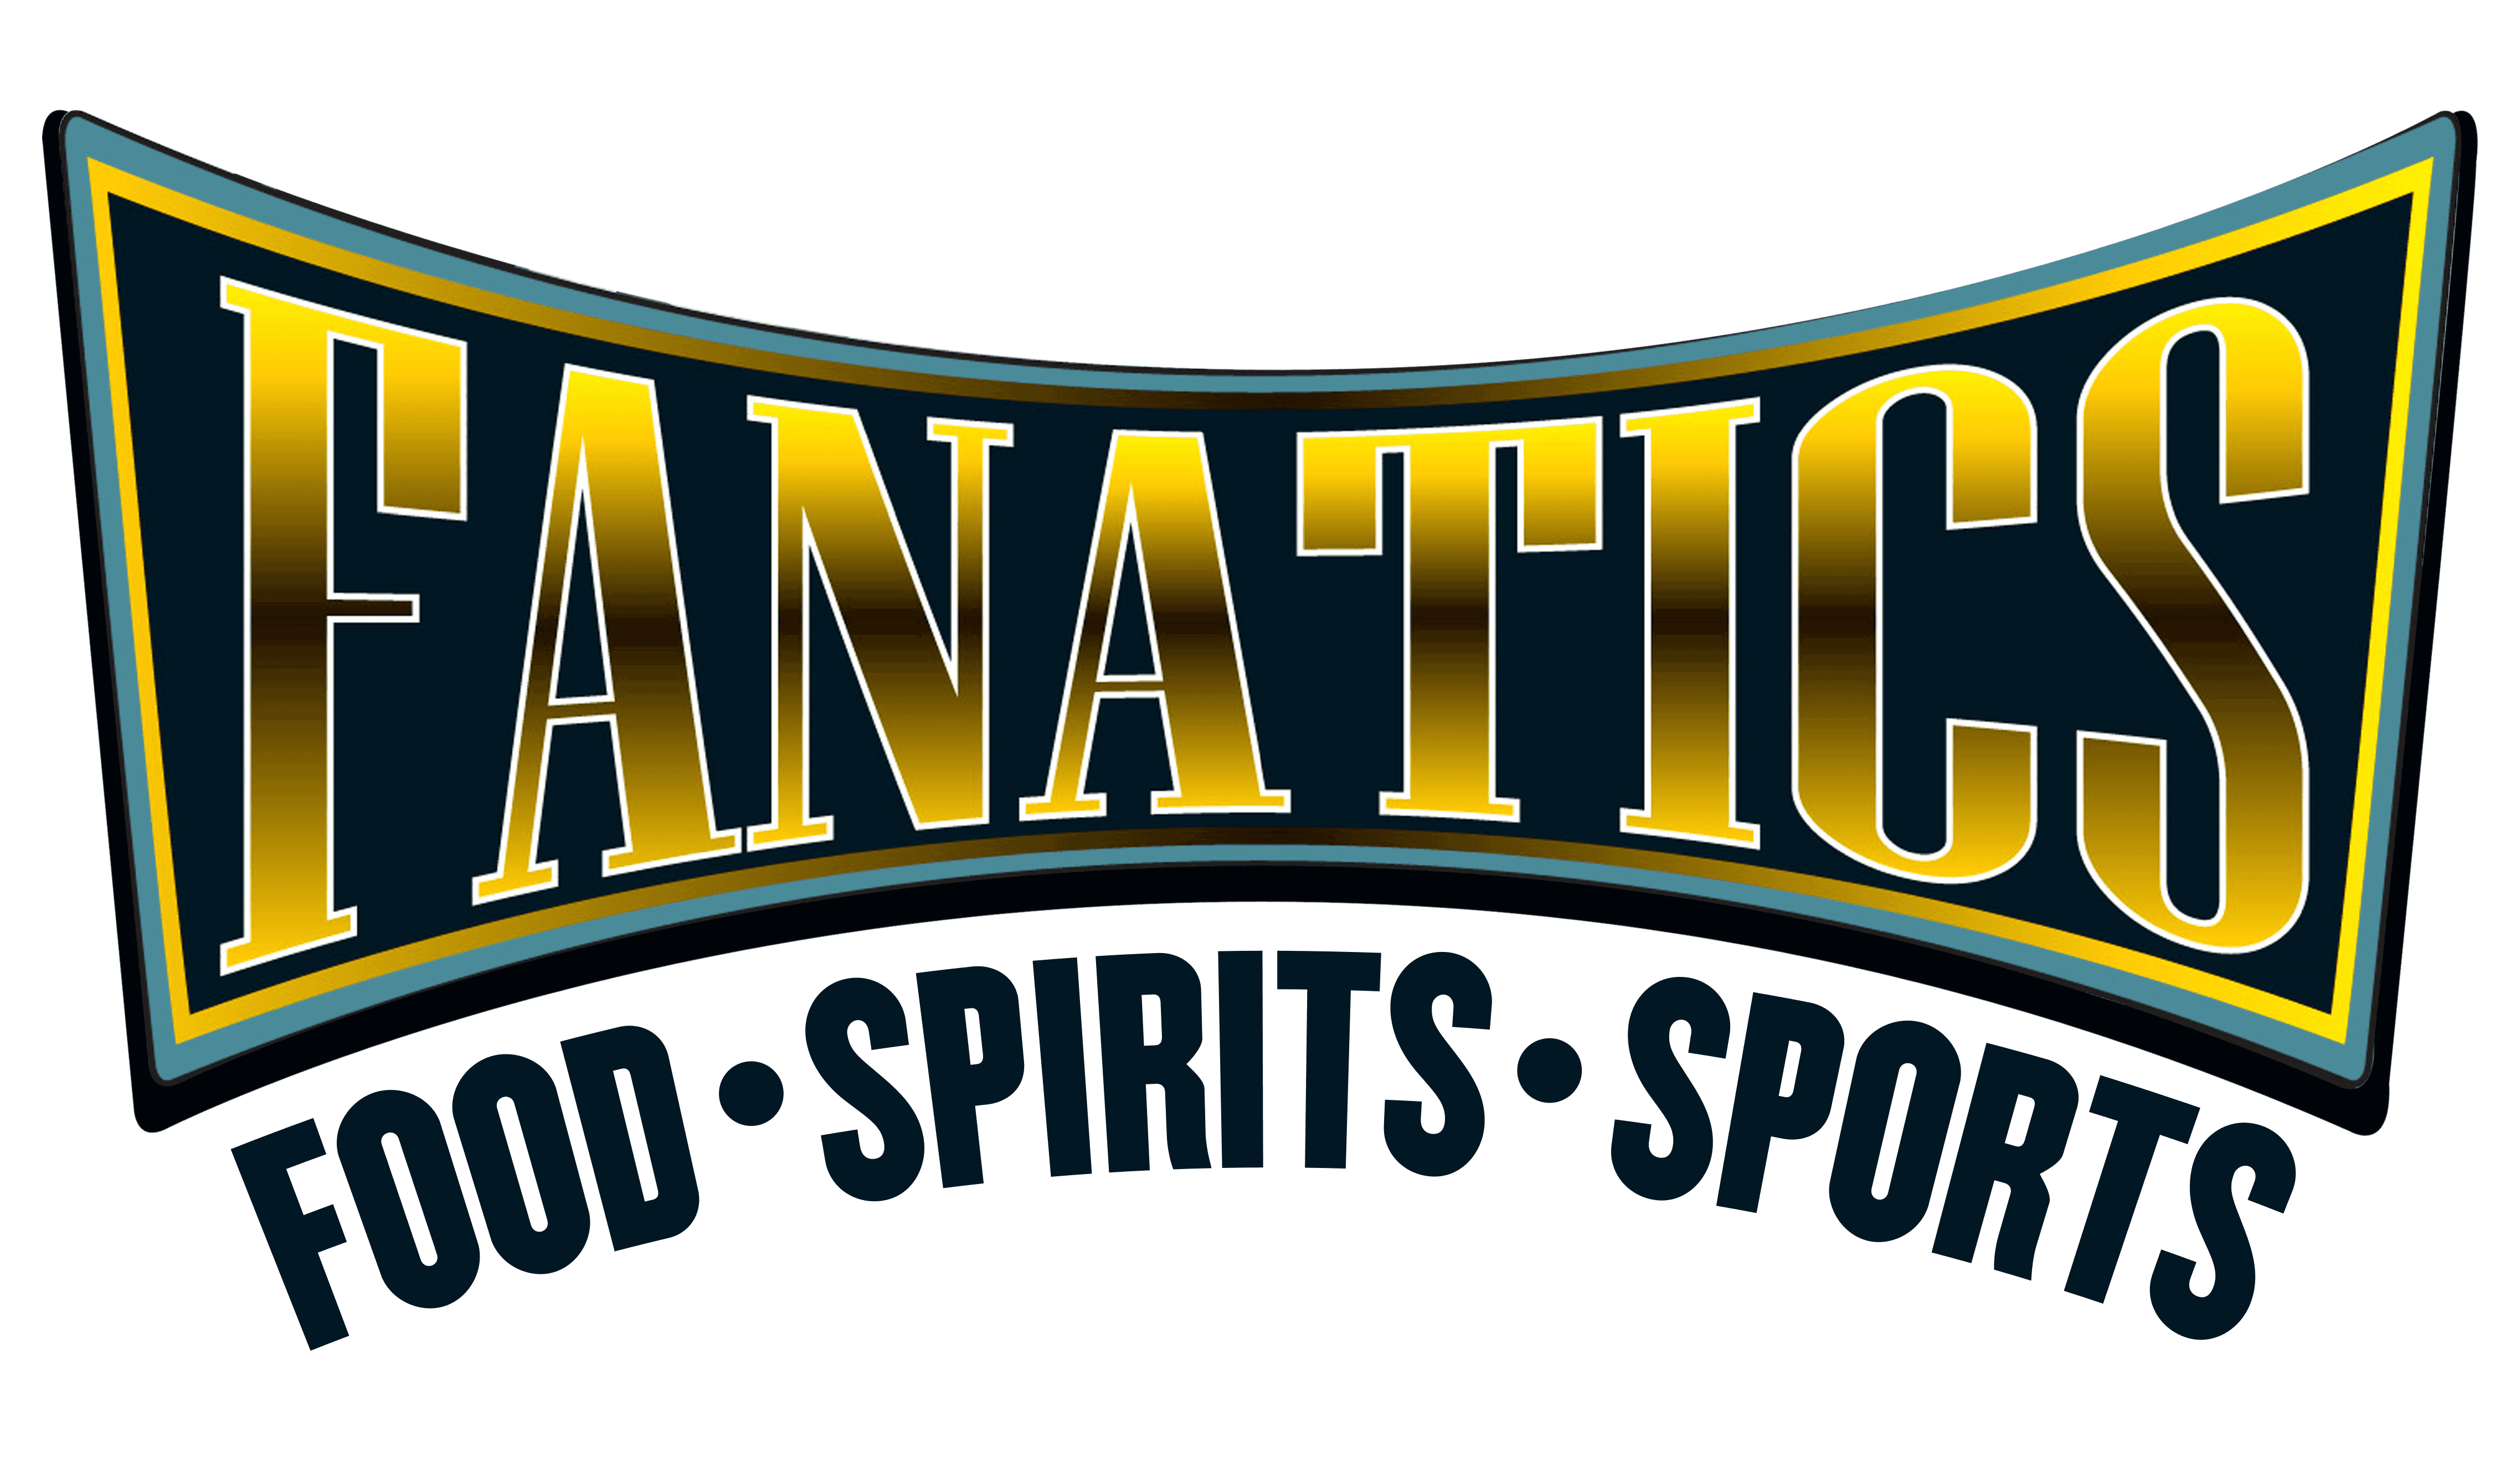 Fanatics Sports Bar